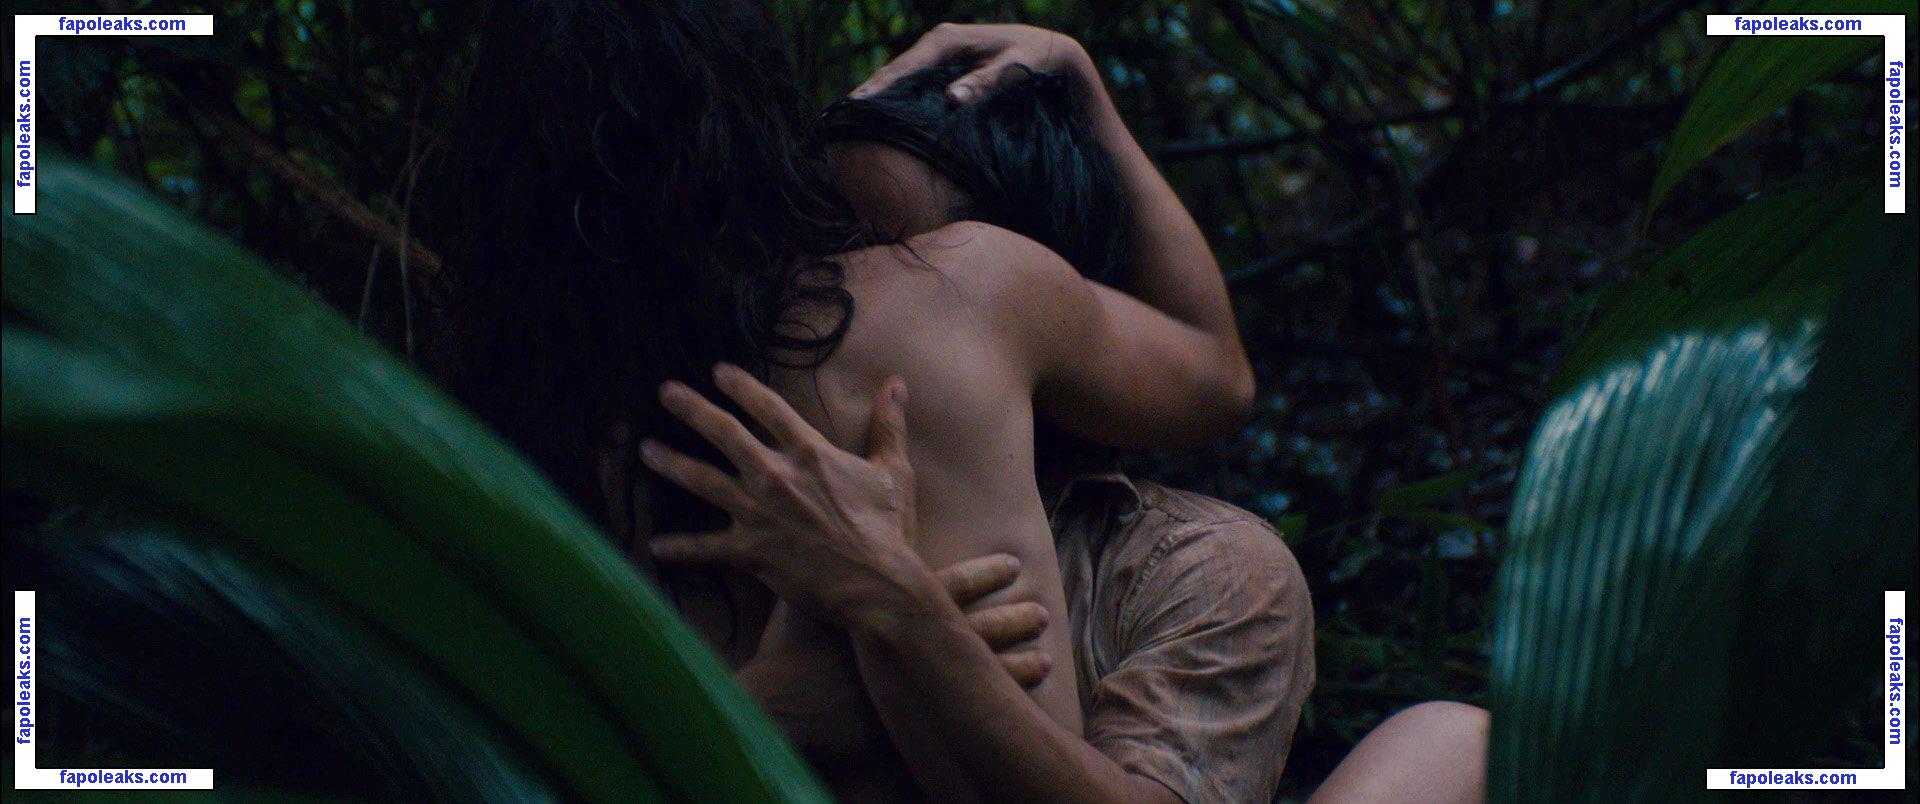 Alice Braga / alicebraga nude photo #0125 from OnlyFans